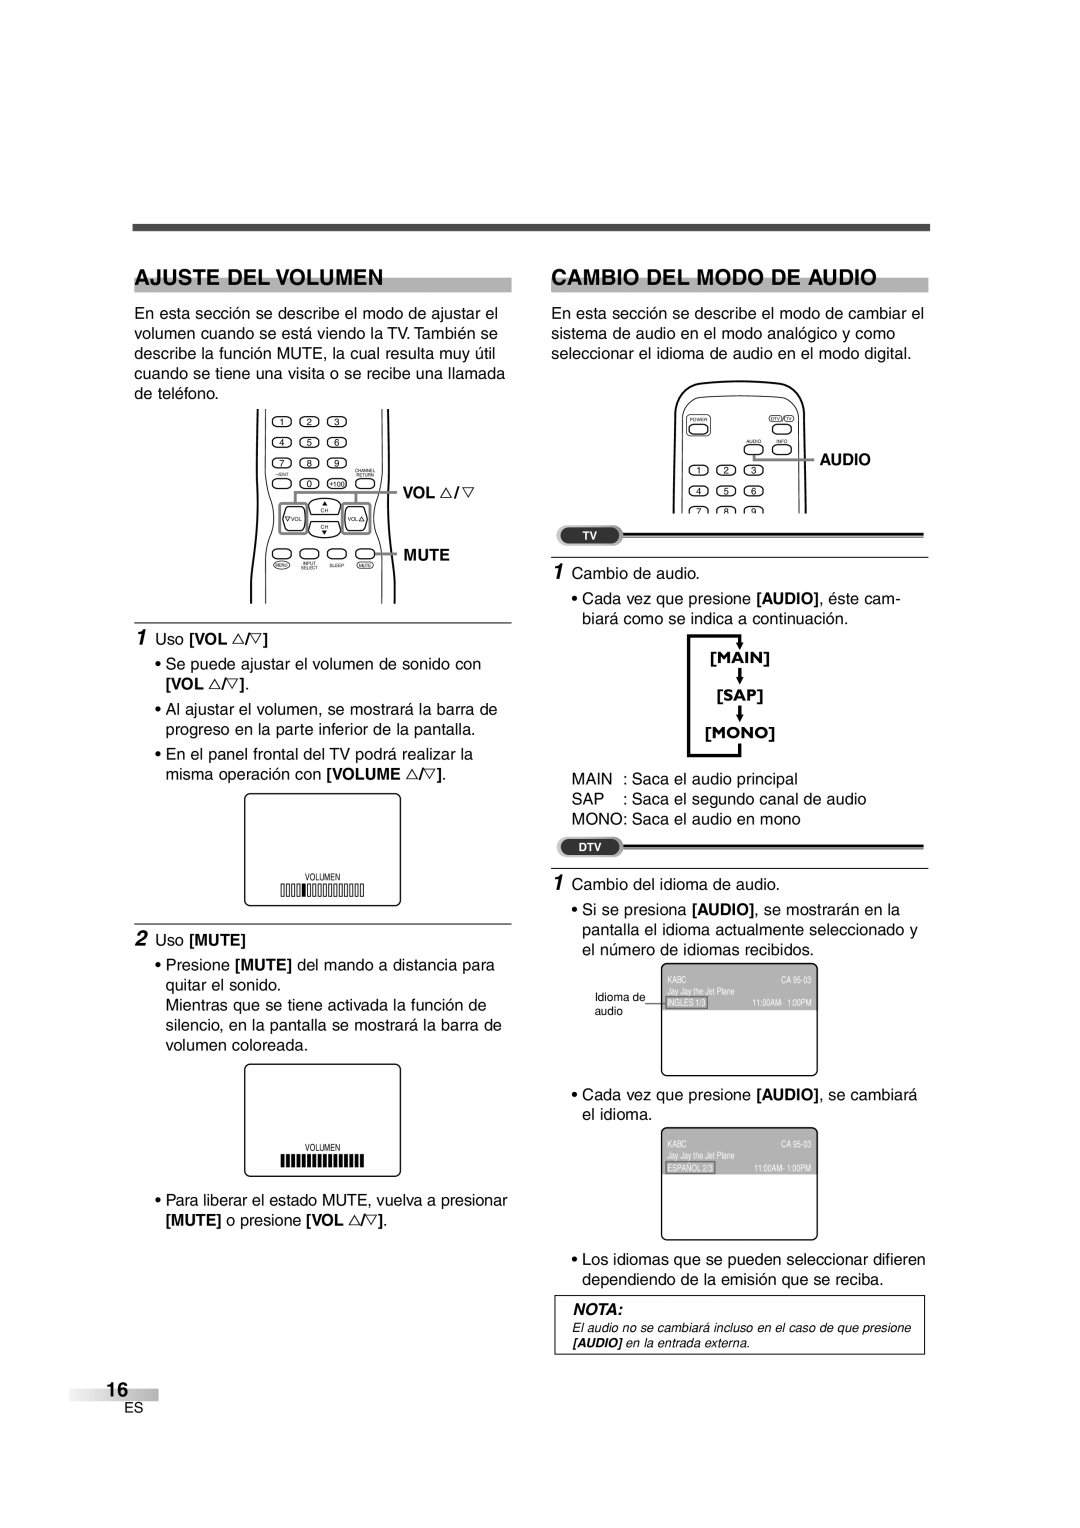 Sylvania SSGF4276 owner manual Ajuste Del Volumen, Cambio Del Modo De Audio, Vol X / Y, Mute, Uso VOL X/Y, Uso MUTE, Nota 